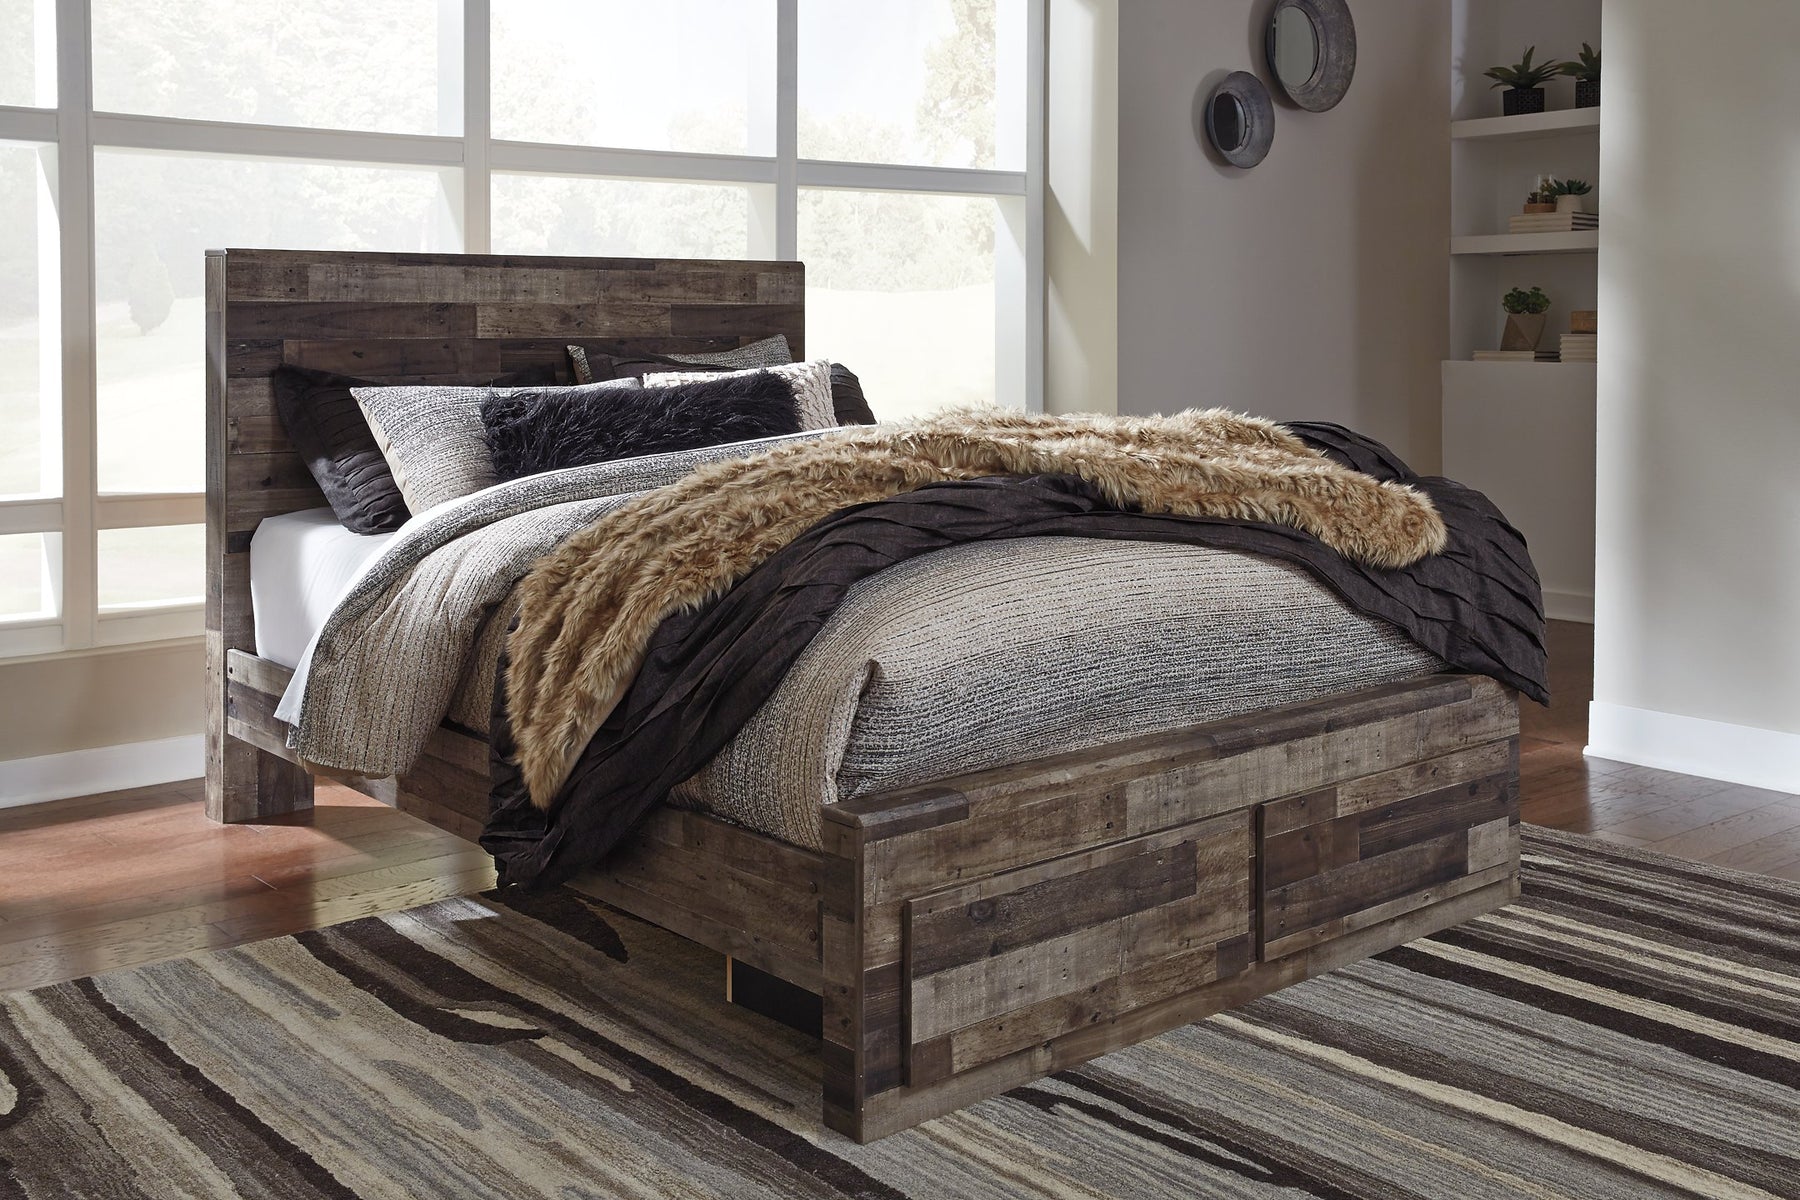 Derekson Bed - Half Price Furniture